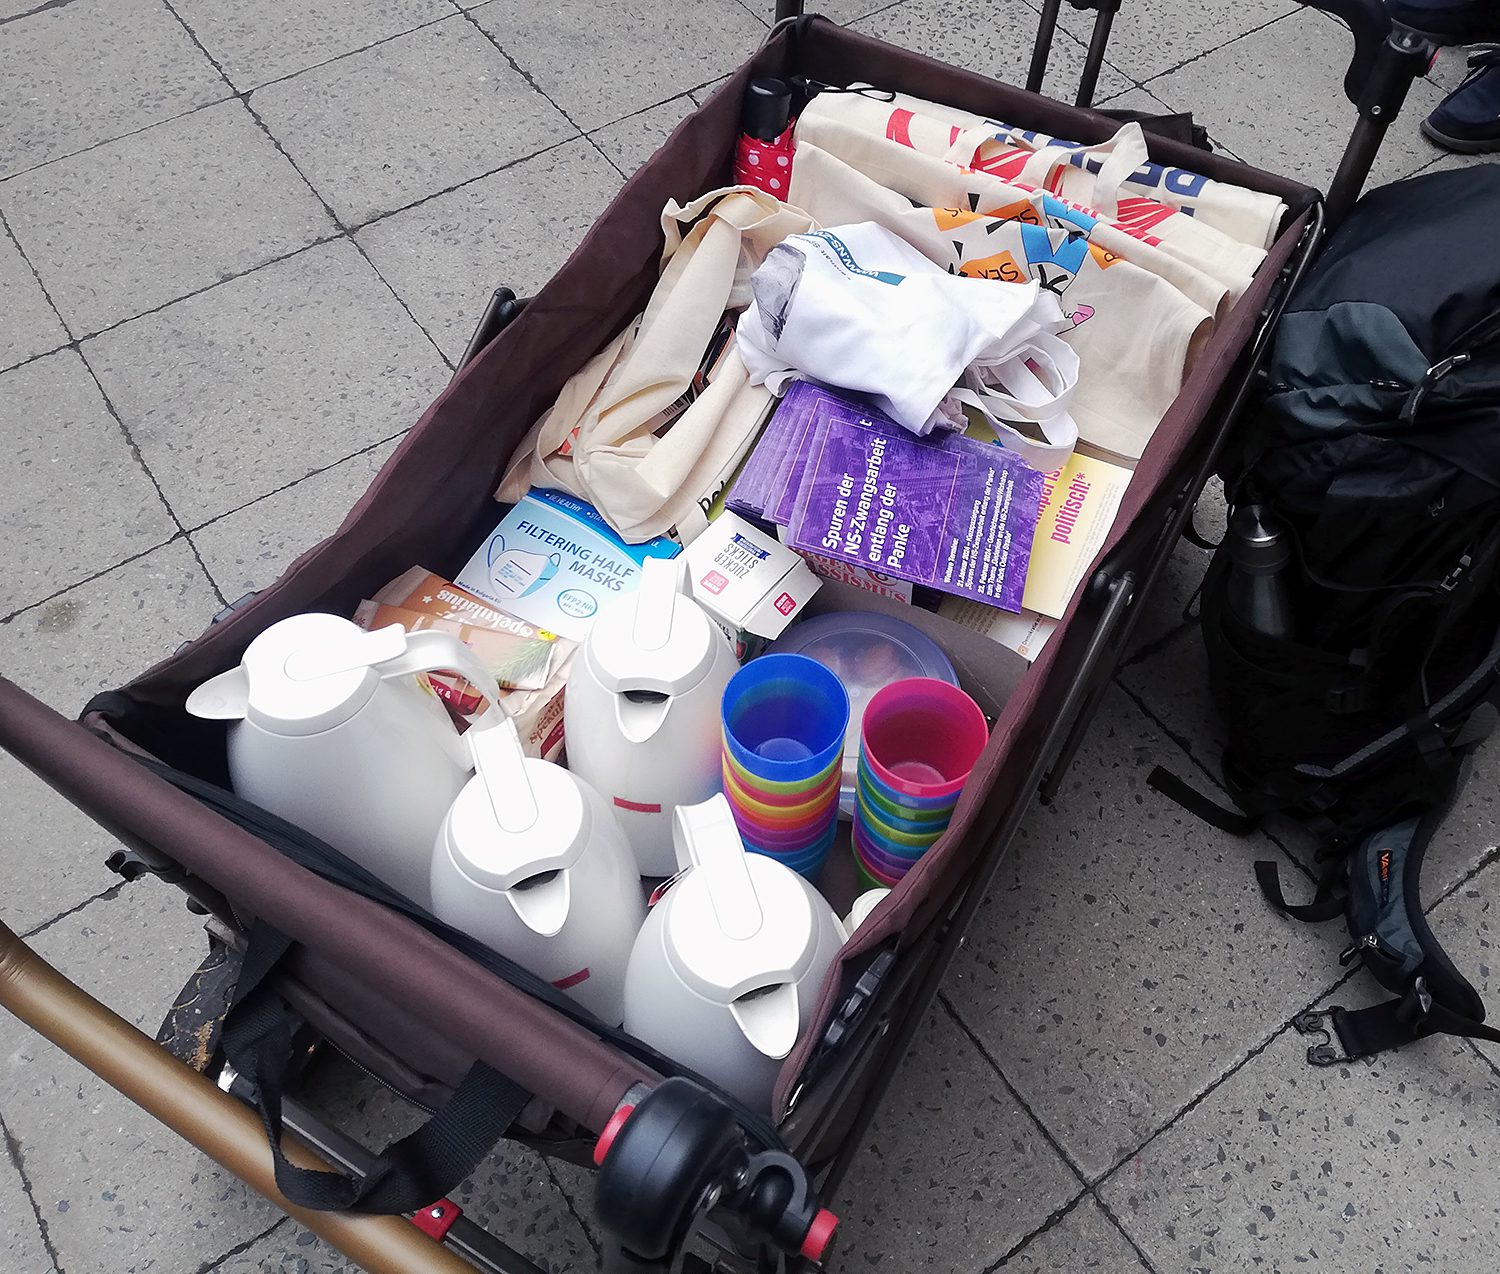 Stärkung für unterwegs: Kaffee, heißer Tee und Kekse. Foto: Hensel